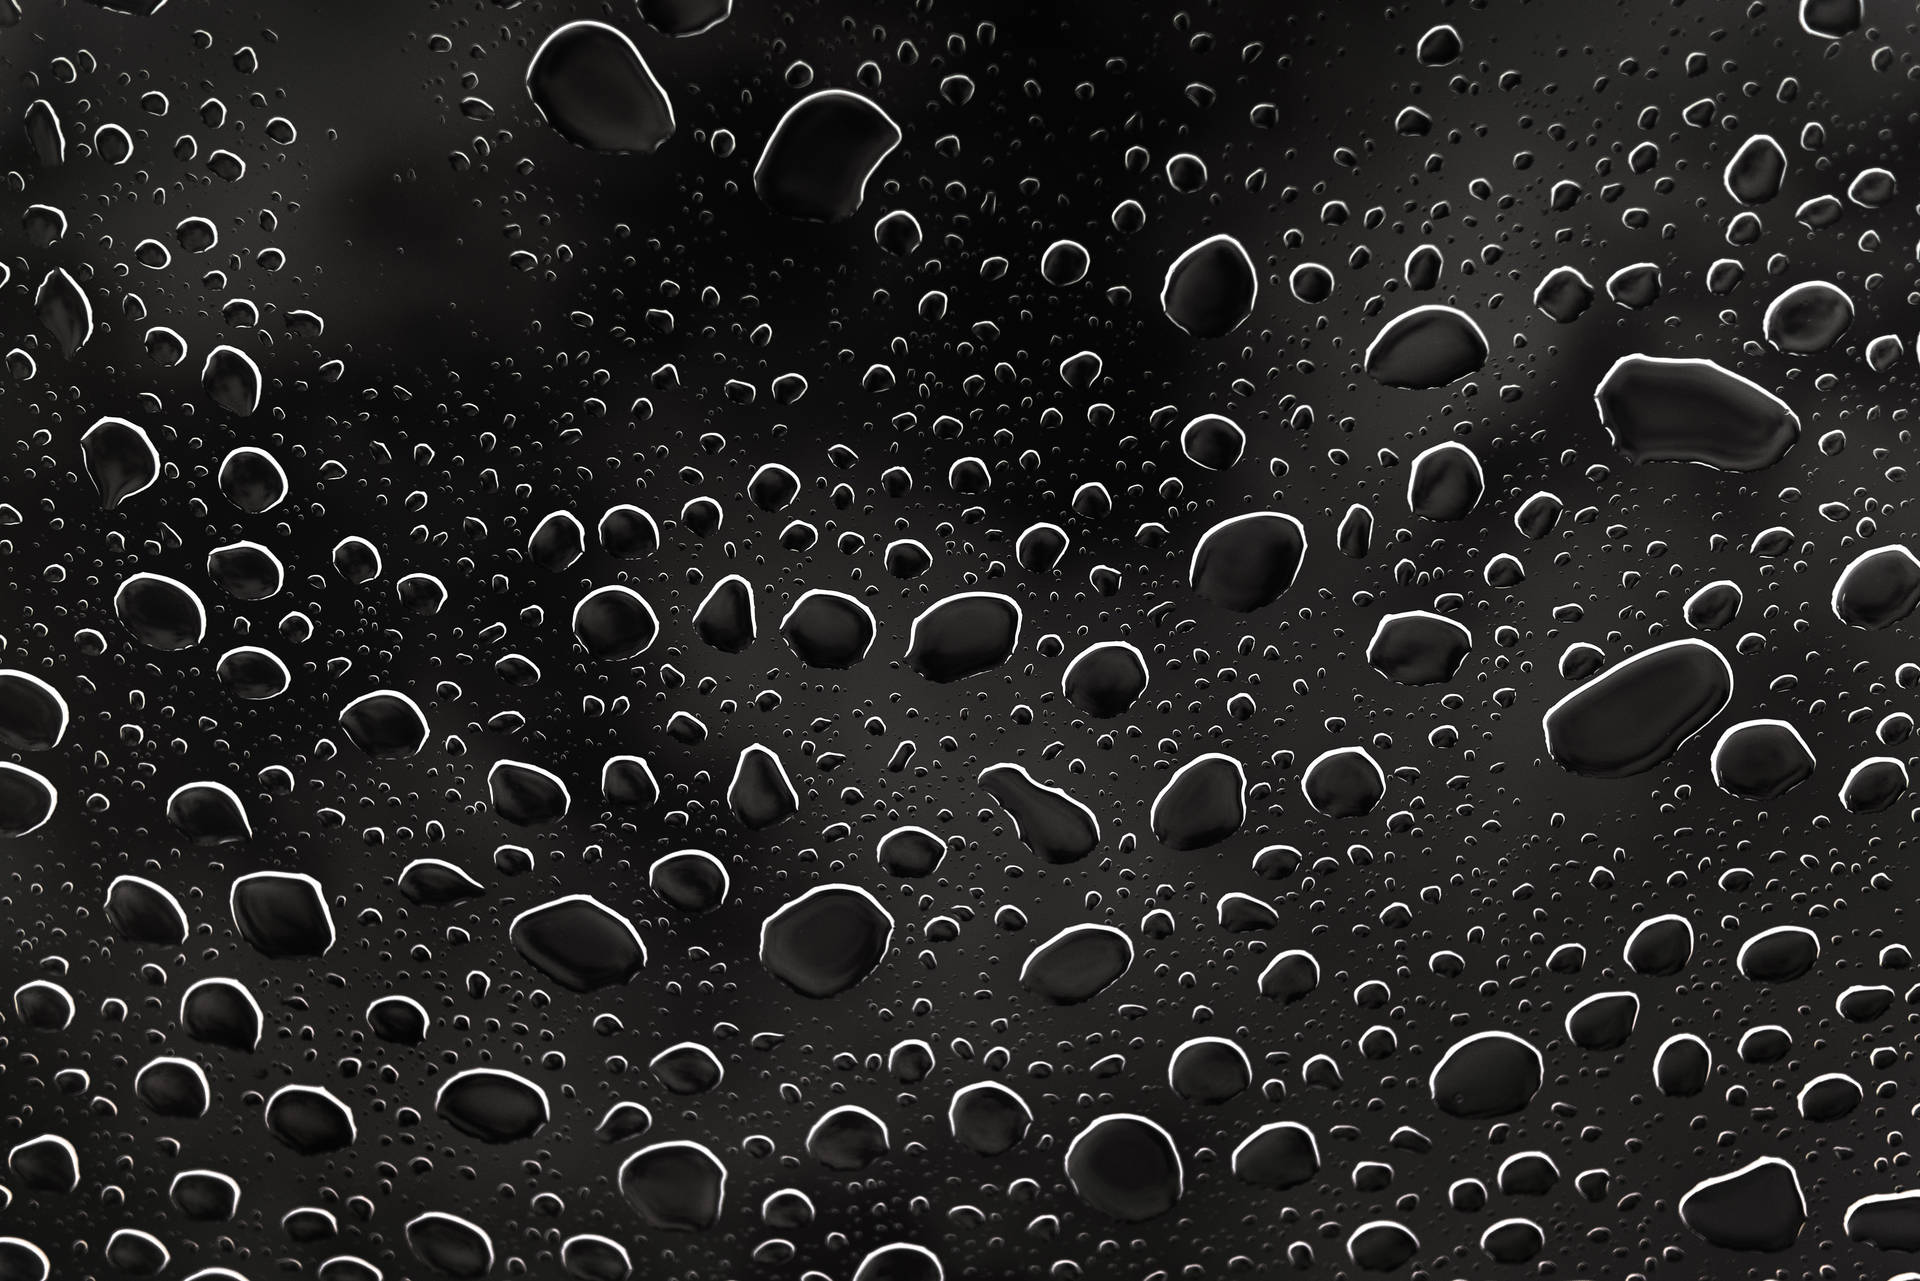 Black Droplets After Raining Background